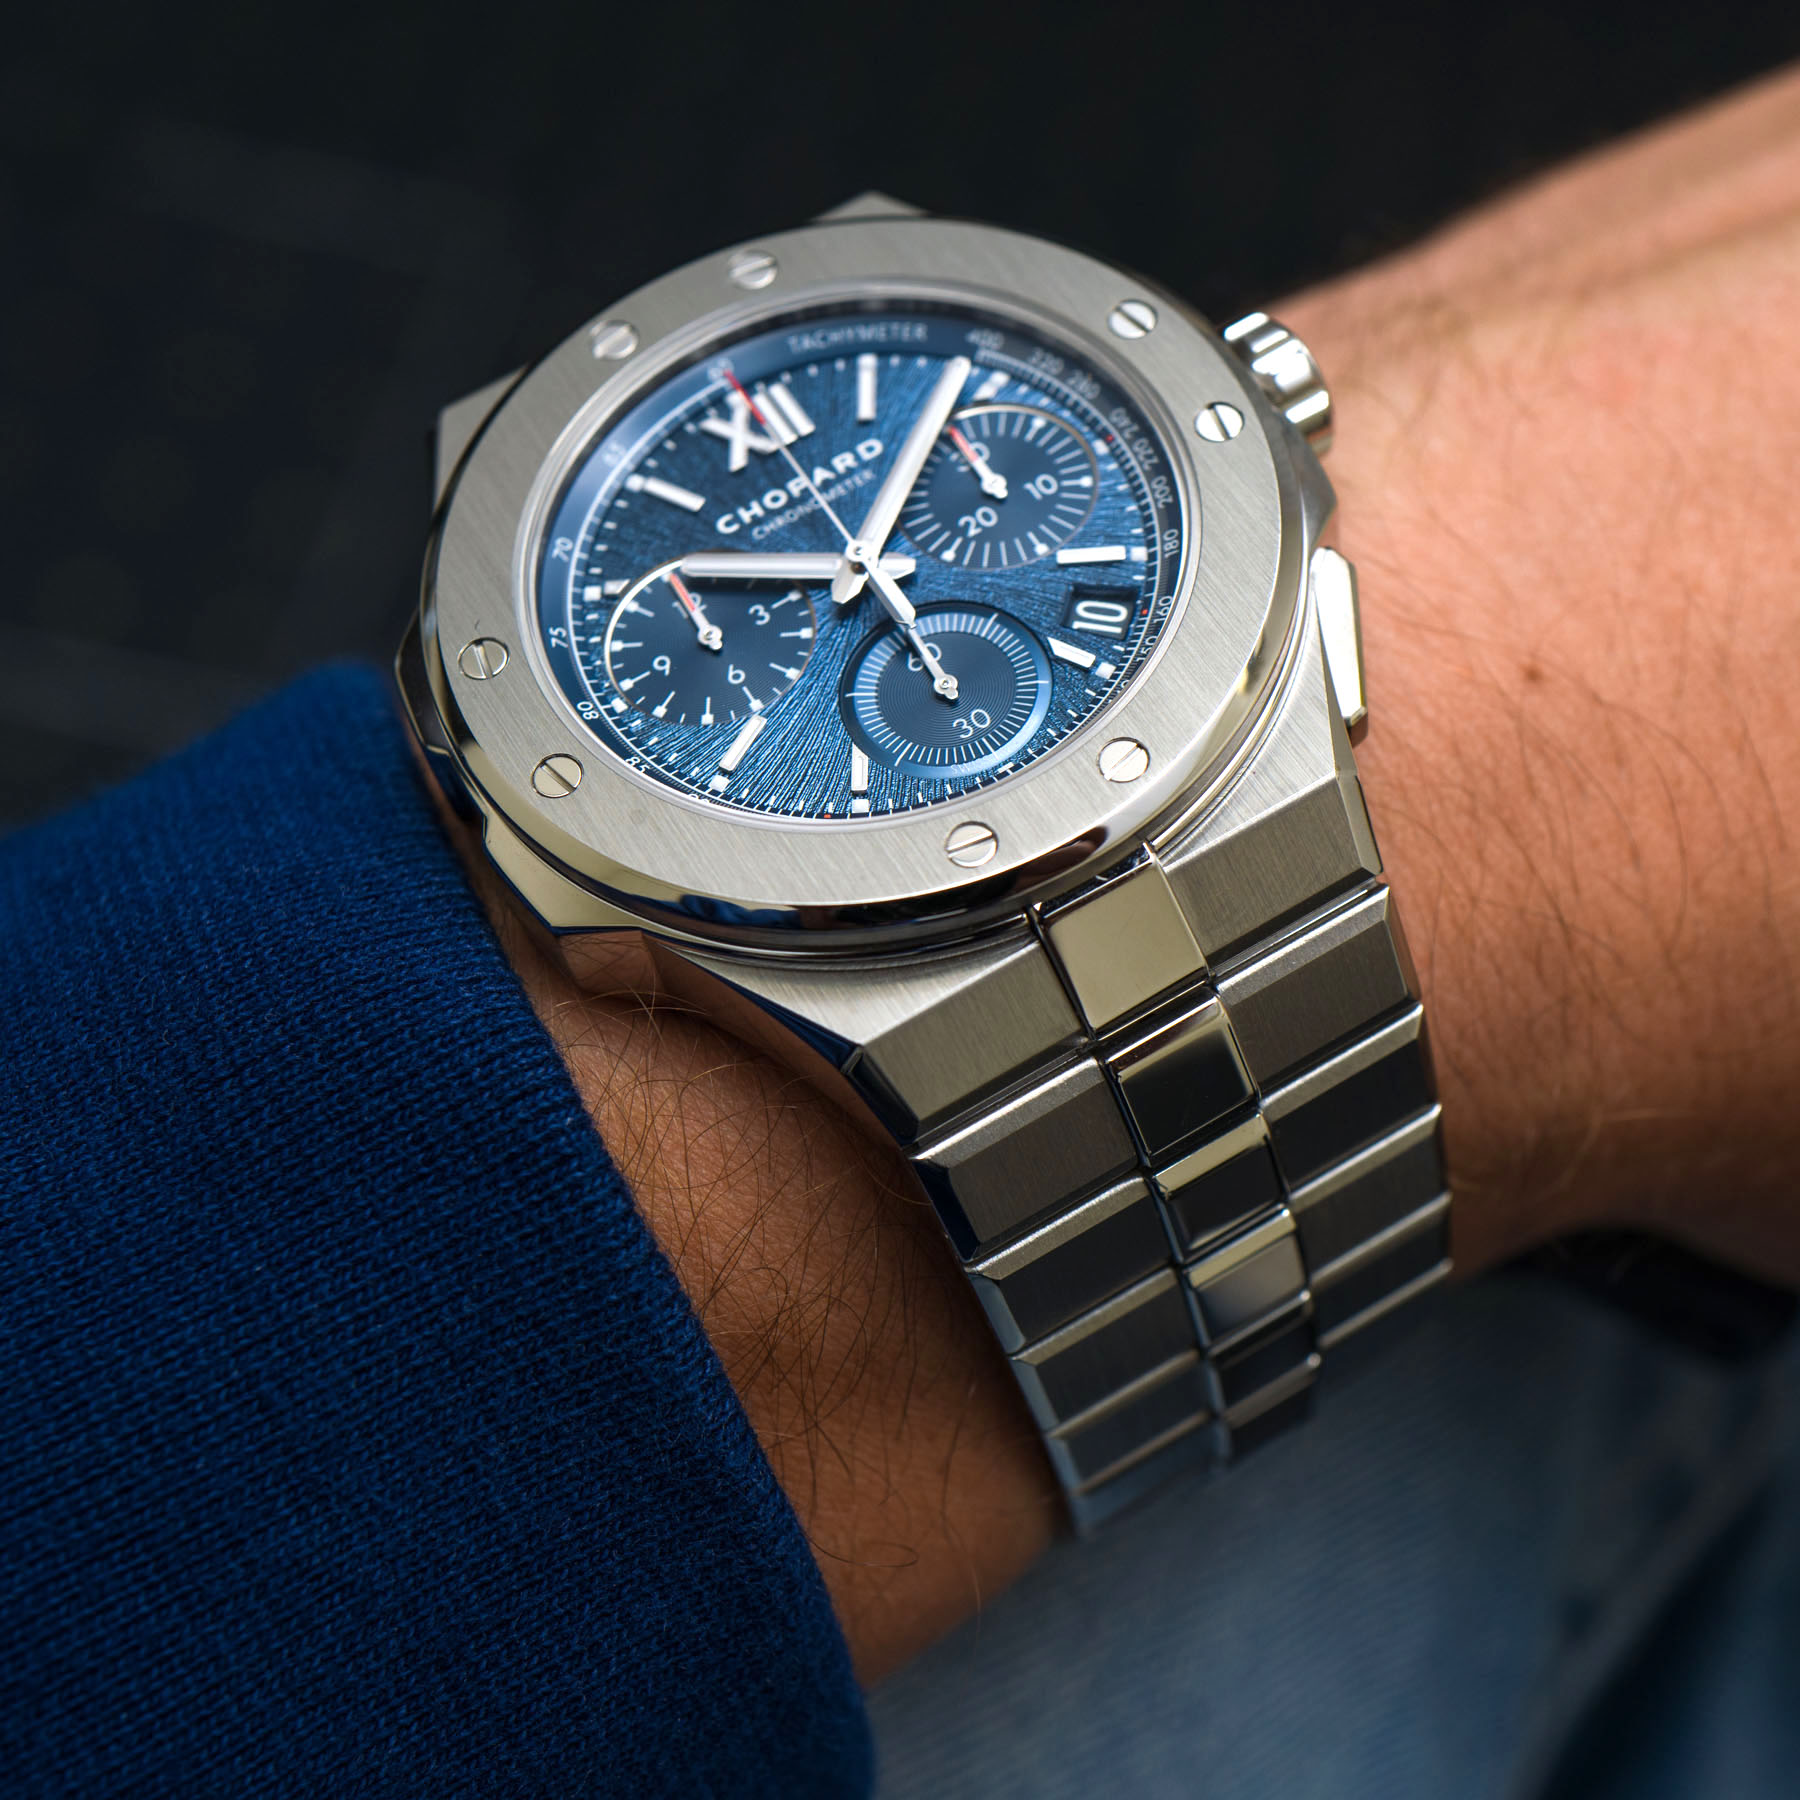 奢华精钢运动腕表推荐-萧邦蓝盘款计时功能XL Chrono手表